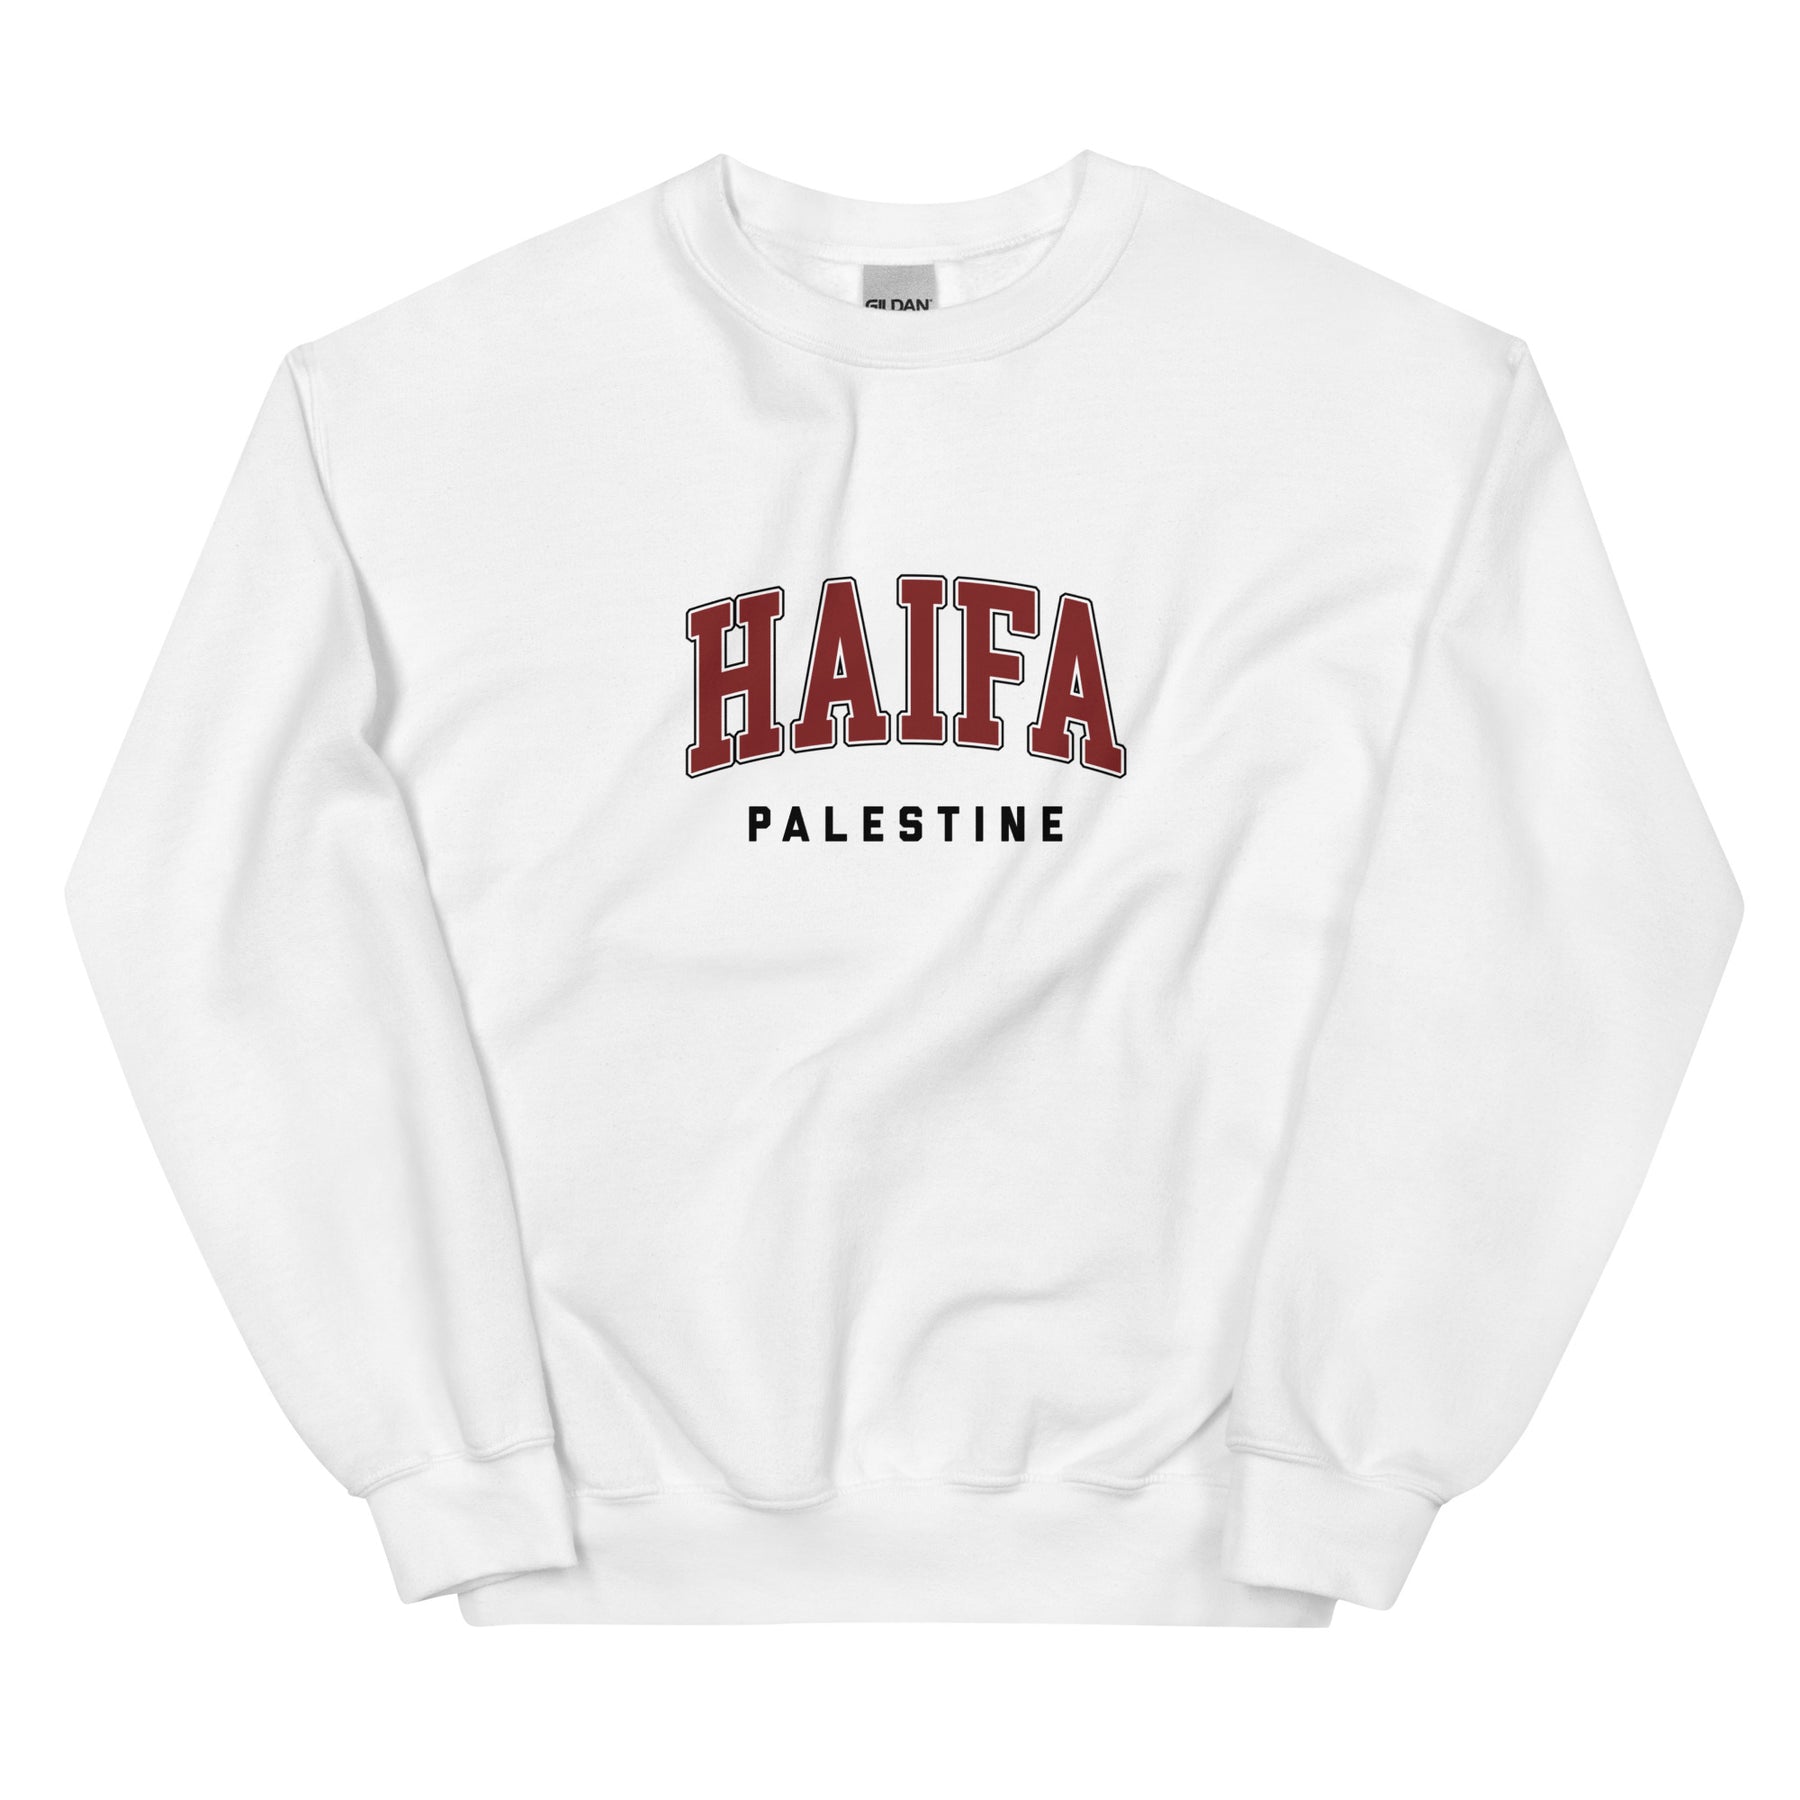 Haifa, Palestine - Sweatshirt